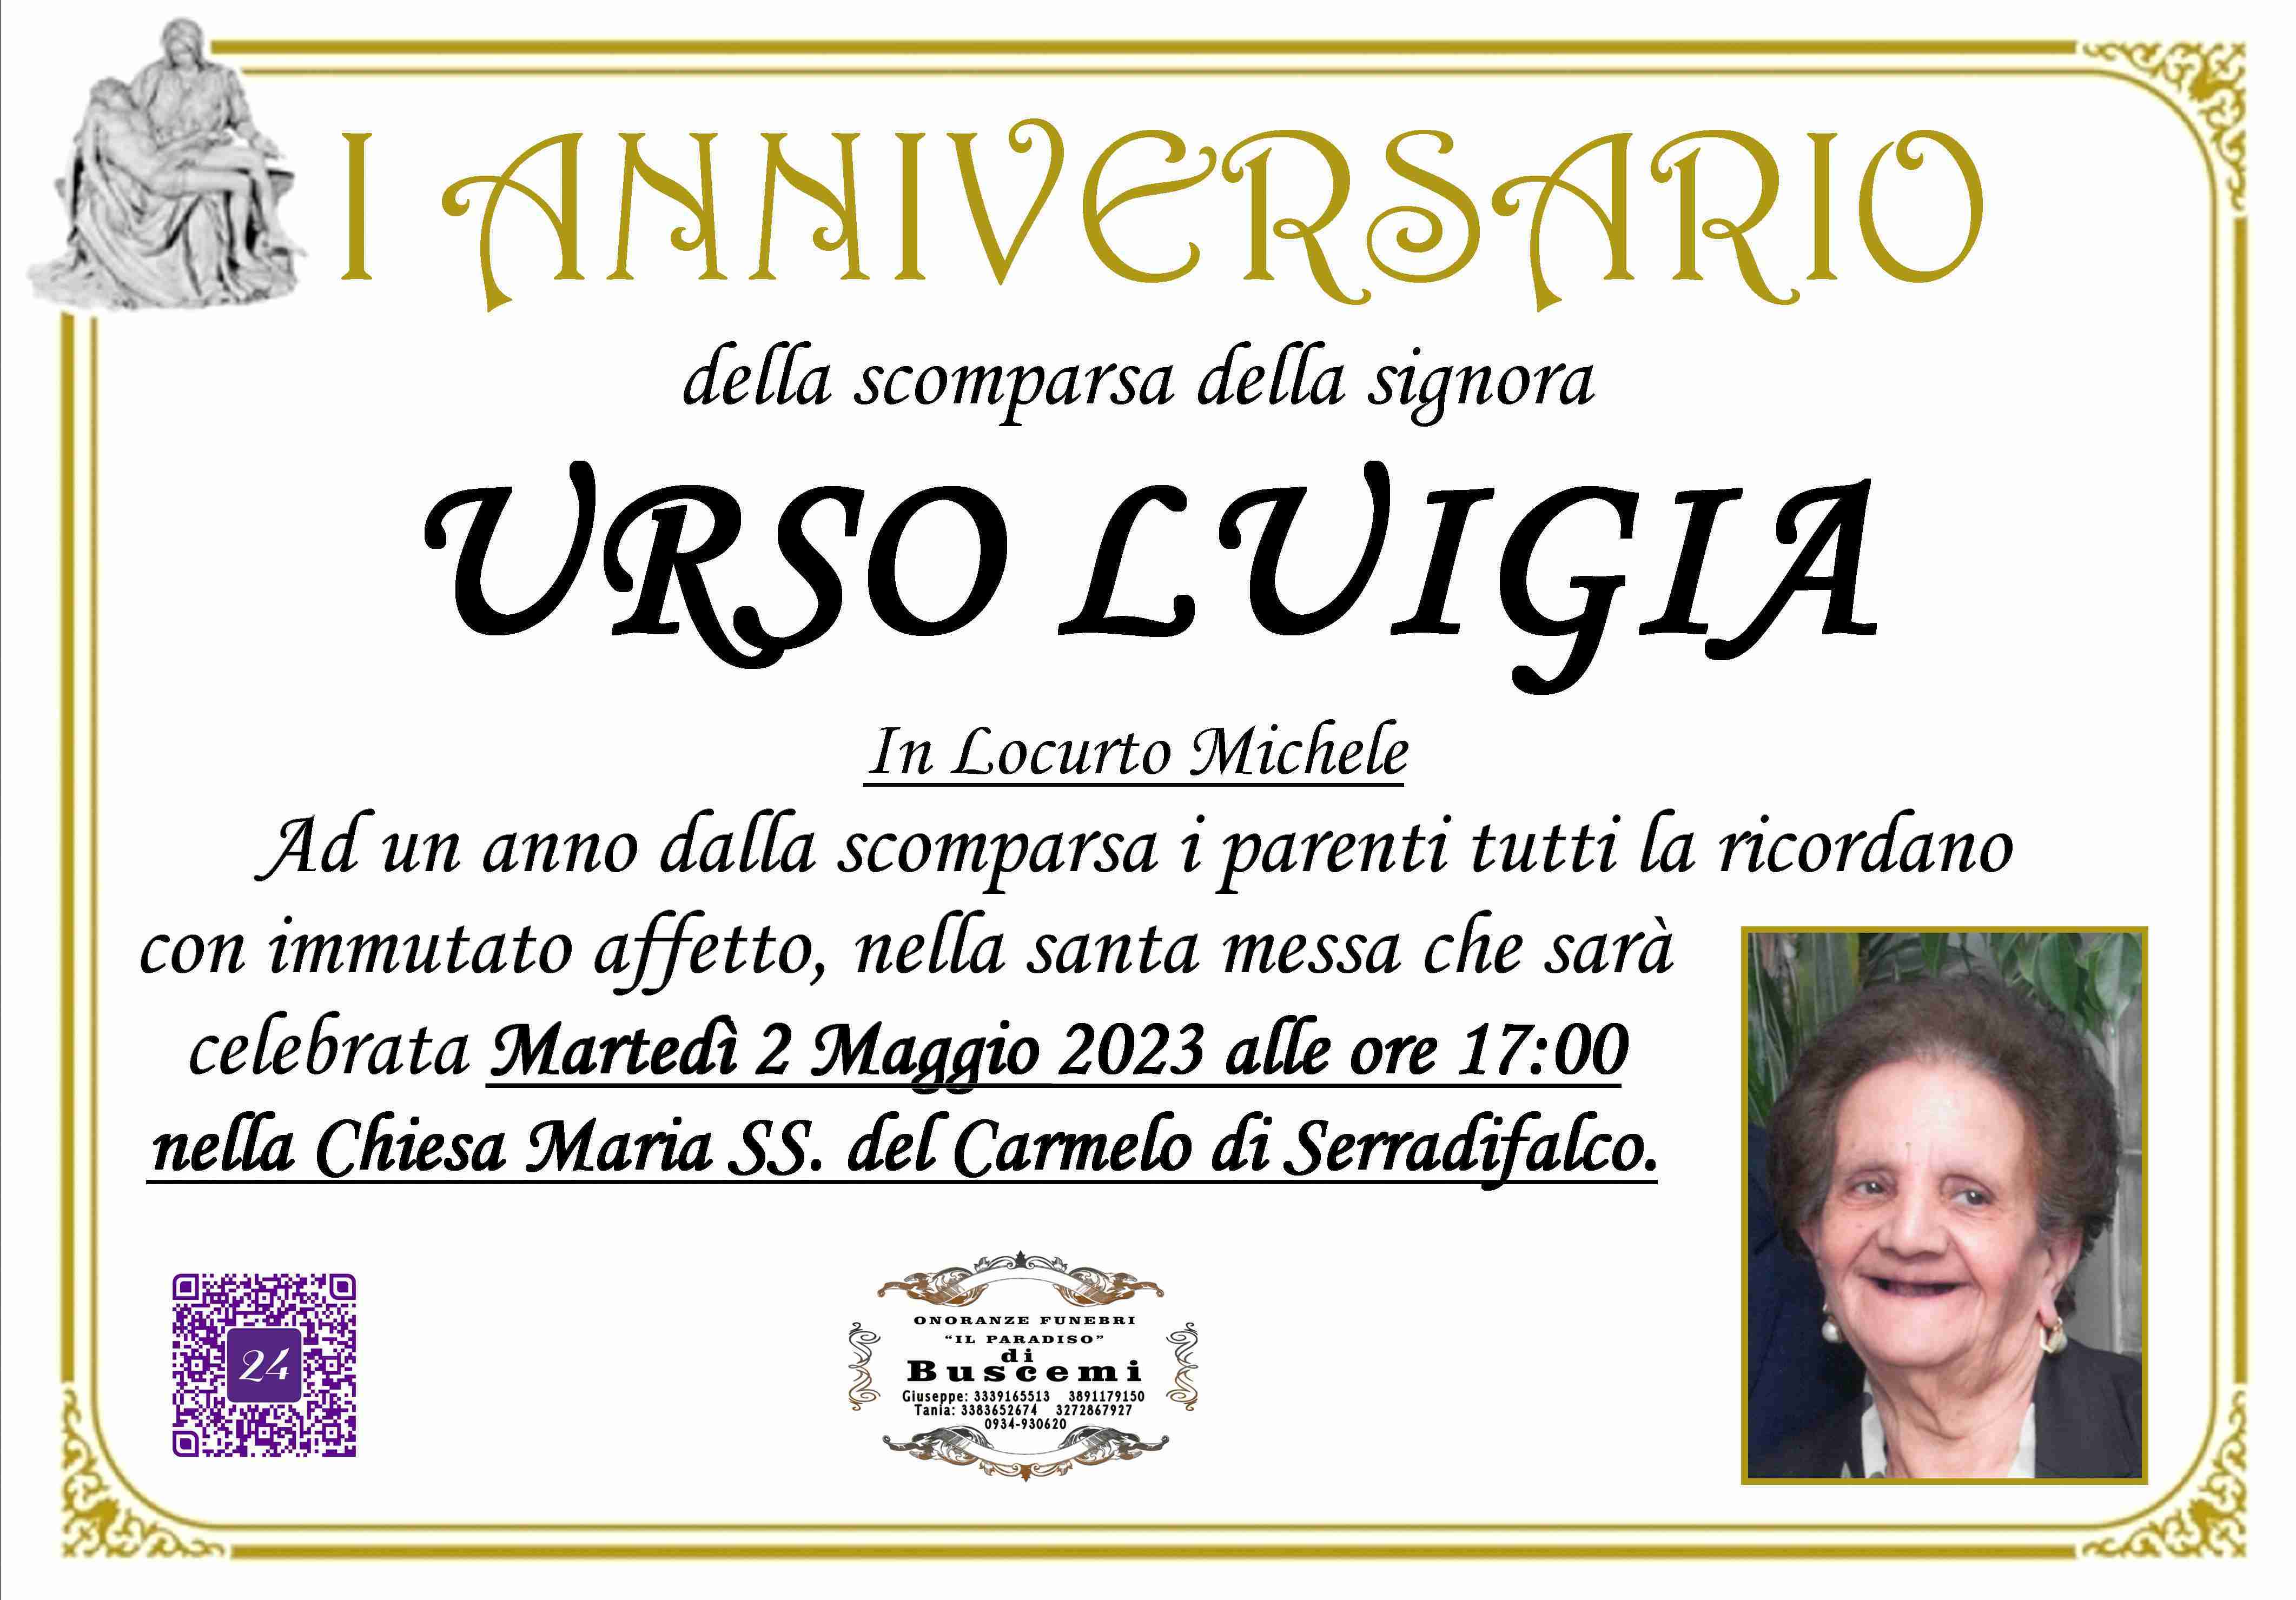 Luigia Urso